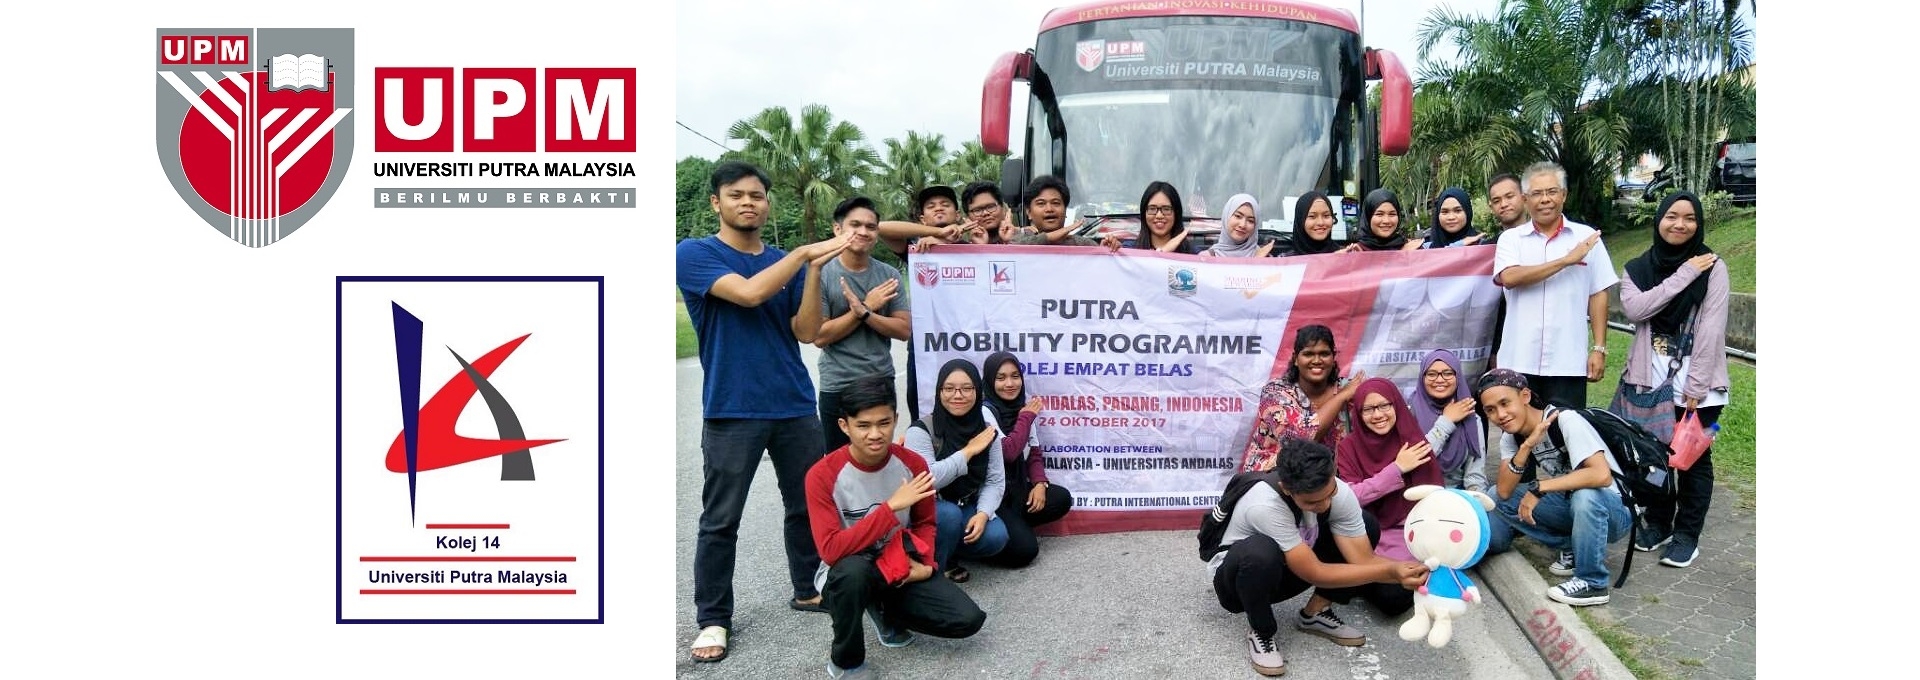 Putra Mobility Programme beri 1001 pengalaman manis kepada mahasiswa UPM